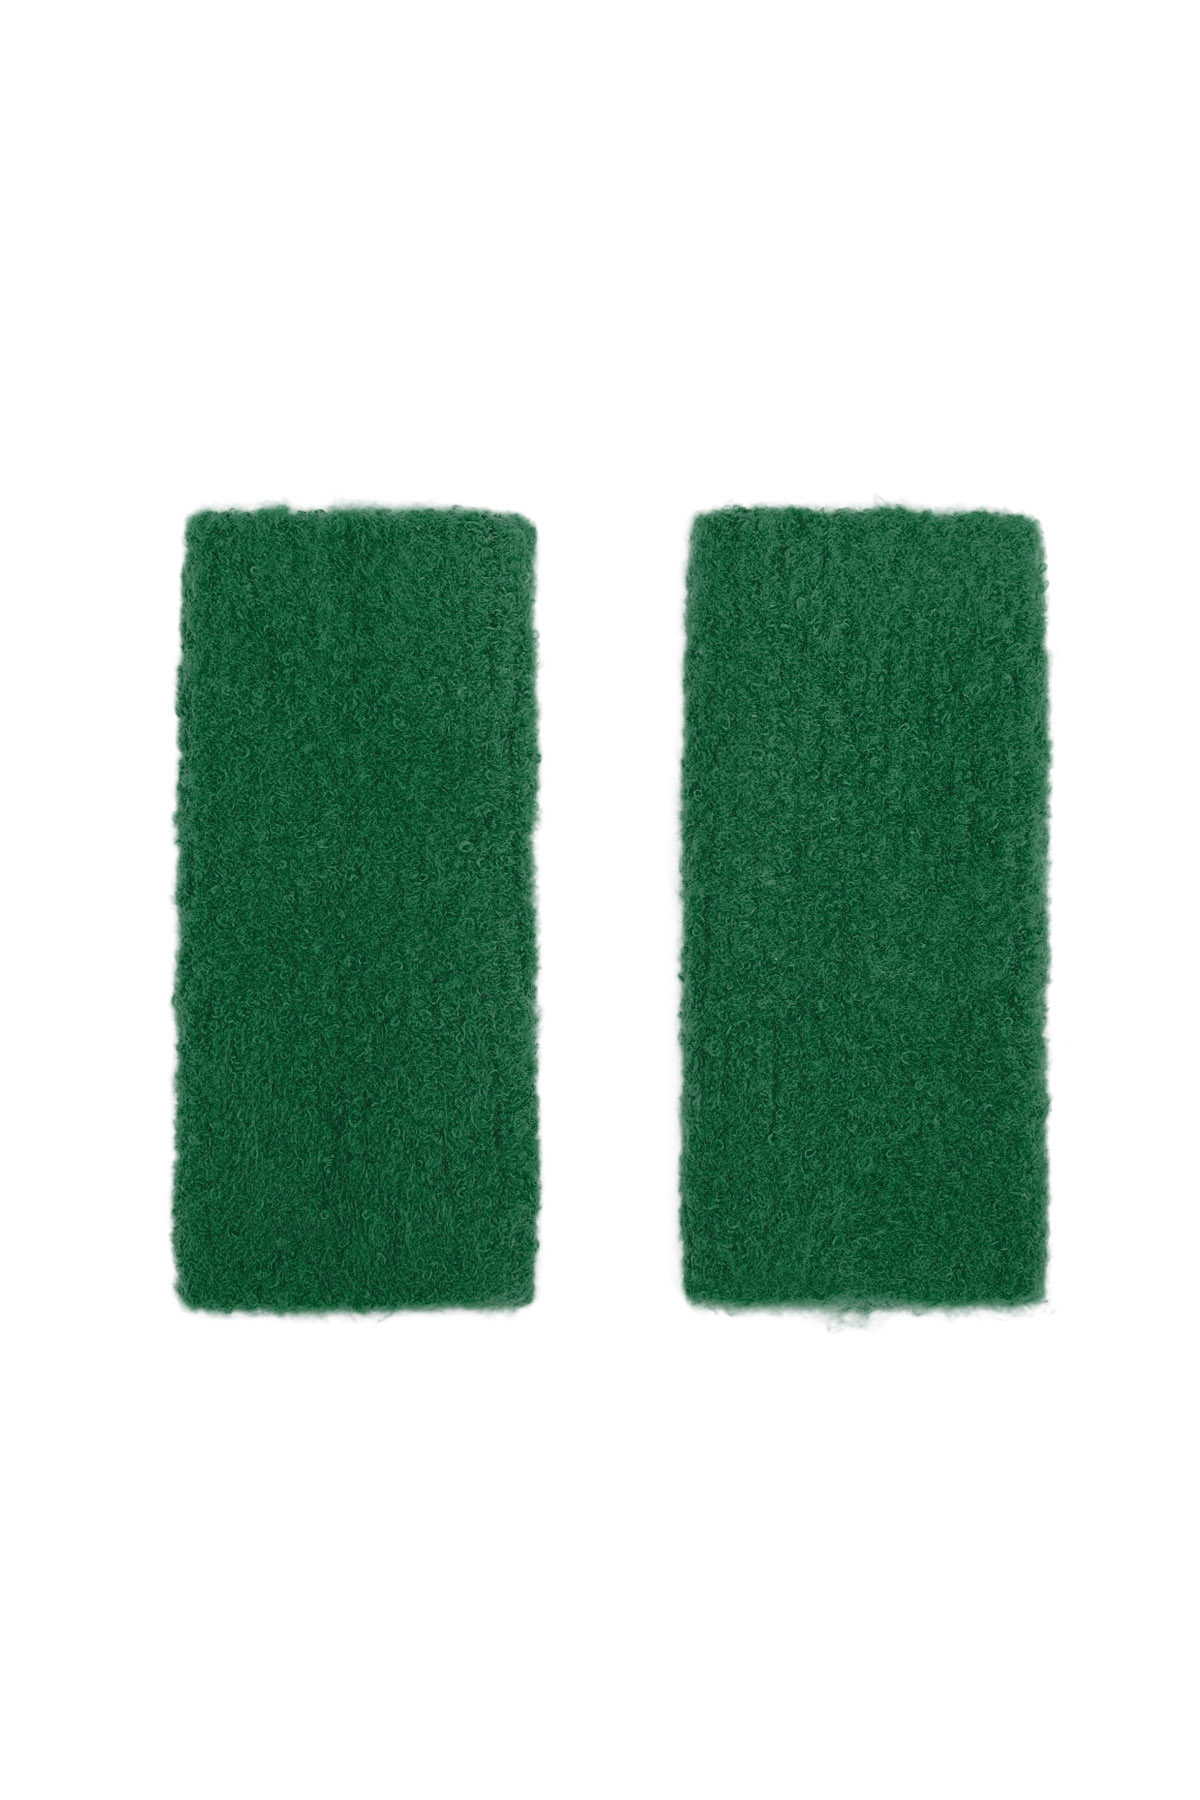 Gants avec trou - vert foncé h5 Image3